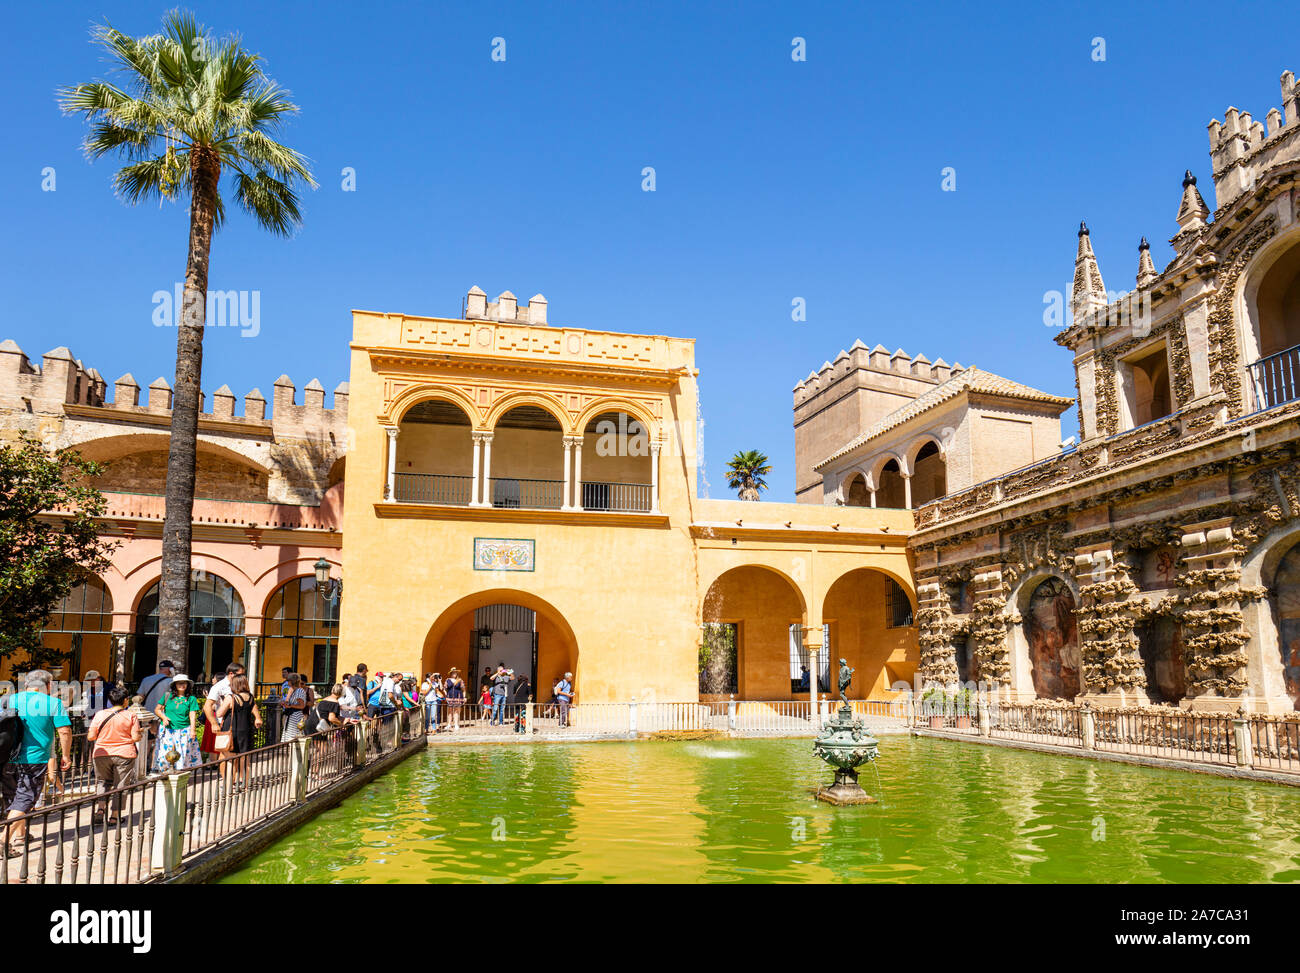 La fontaine de mercure dans le Jardín del Estanque l'un des jardins de l'Alcazar de Séville Séville Andalousie Espagne palace Espagne eu Europe Banque D'Images